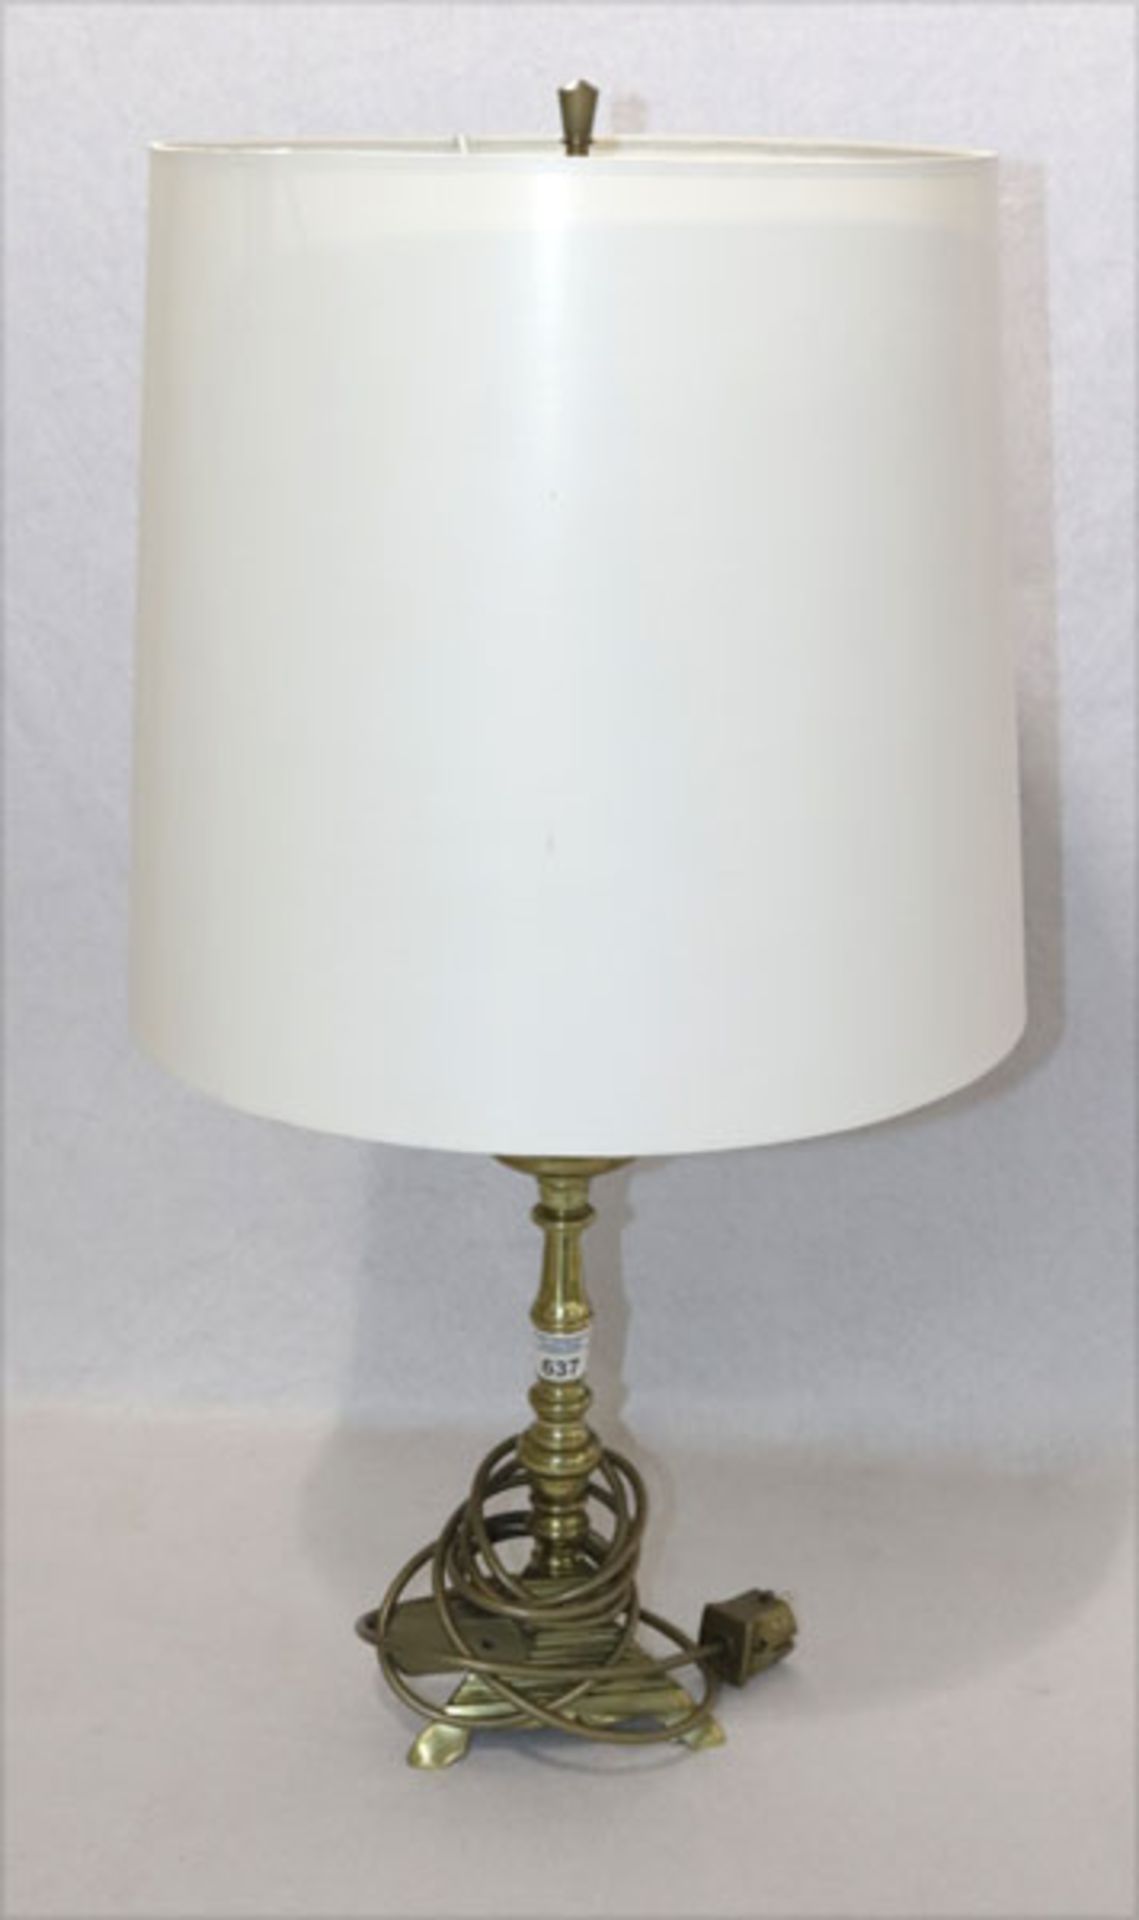 Messing Tischlampe mit beigen Schirm, H 75 cm, D 38 cm, Gebrauchsspuren